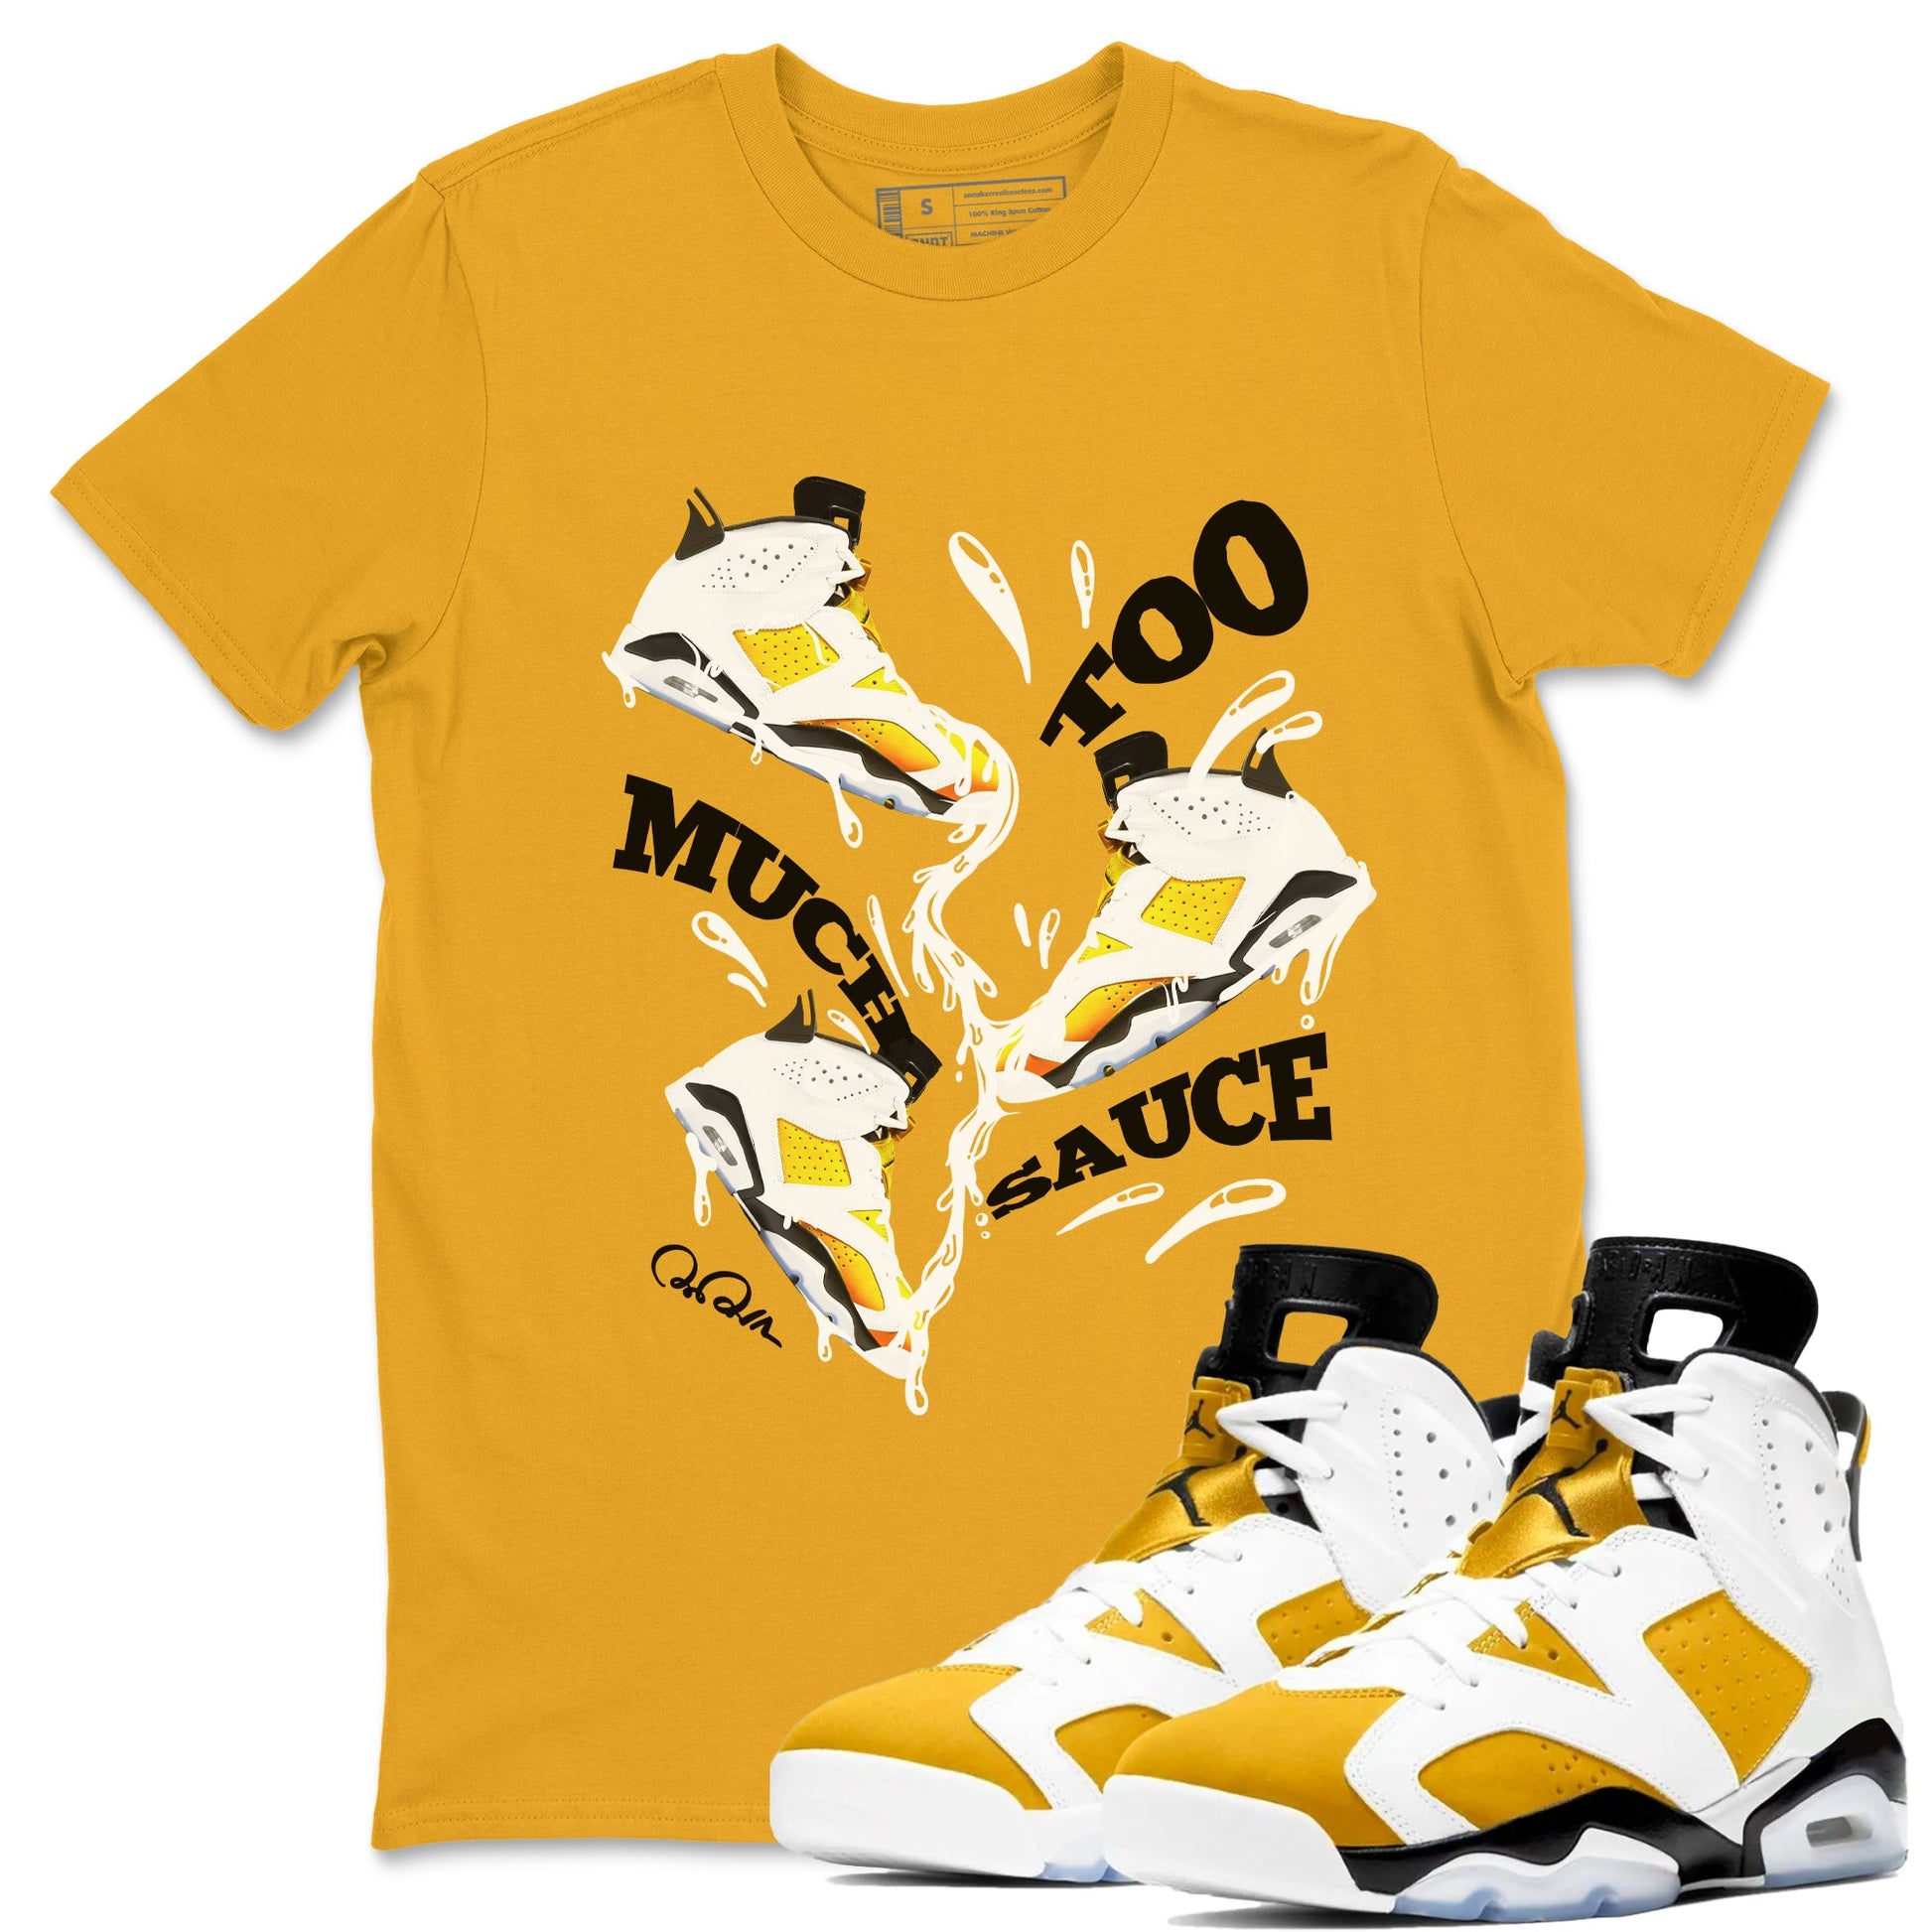 6s Yellow Ochre shirt to match jordans Too Much Sauce sneaker tees Air Jordan 6 Yellow Ochre SNRT Sneaker Release Tees Unisex Gold 1 T-Shirt